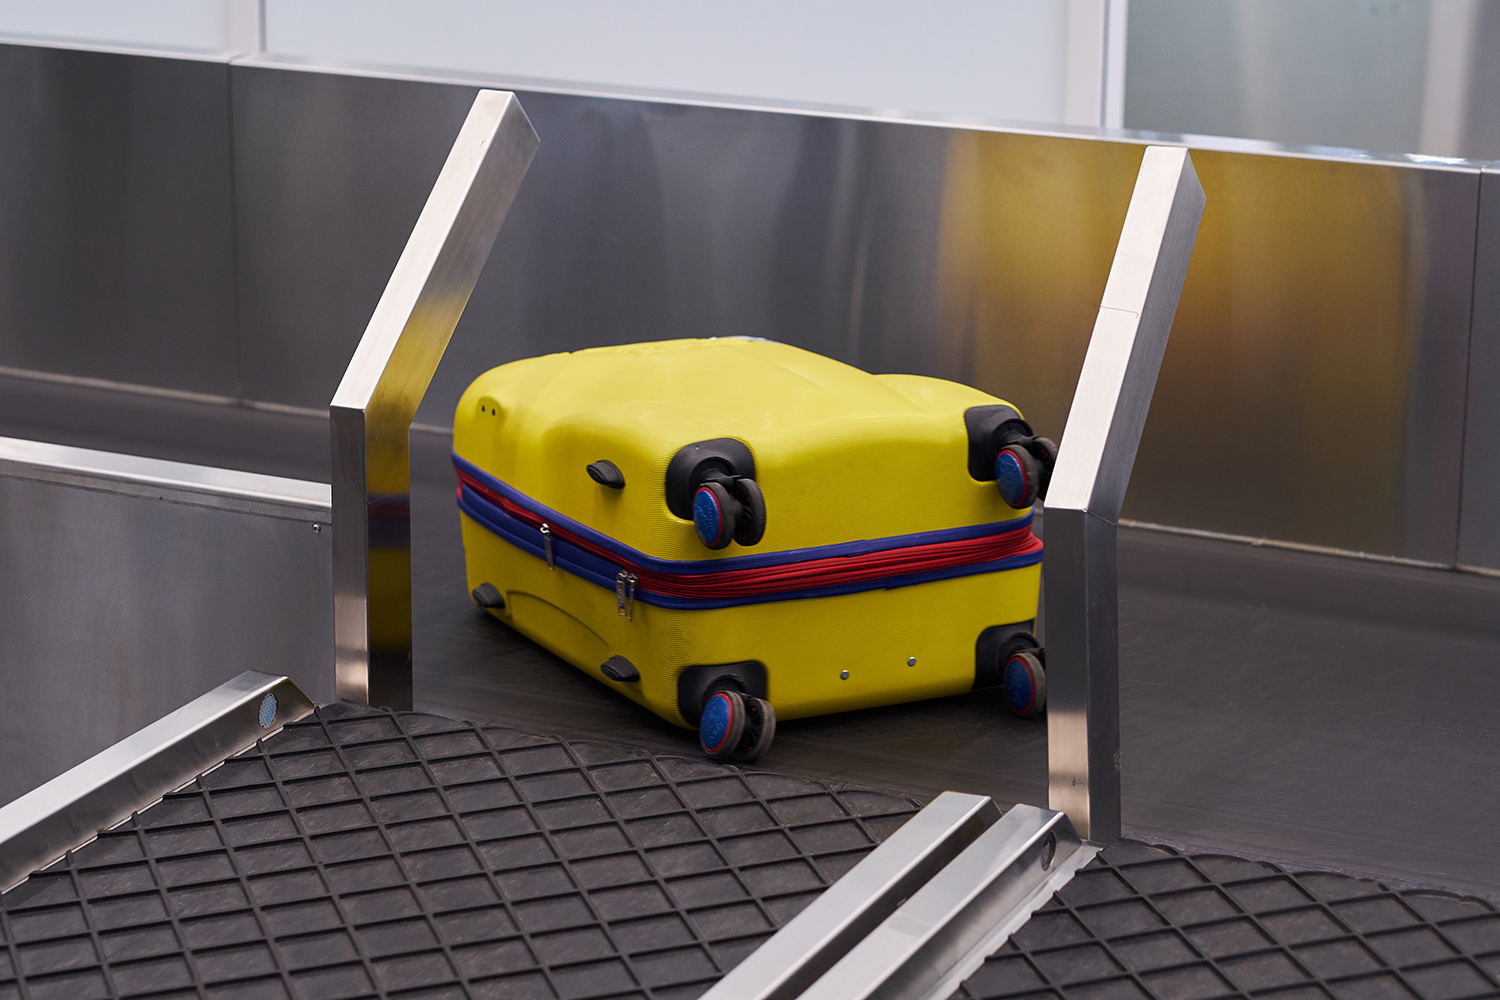 Багажные системы для аэропортов